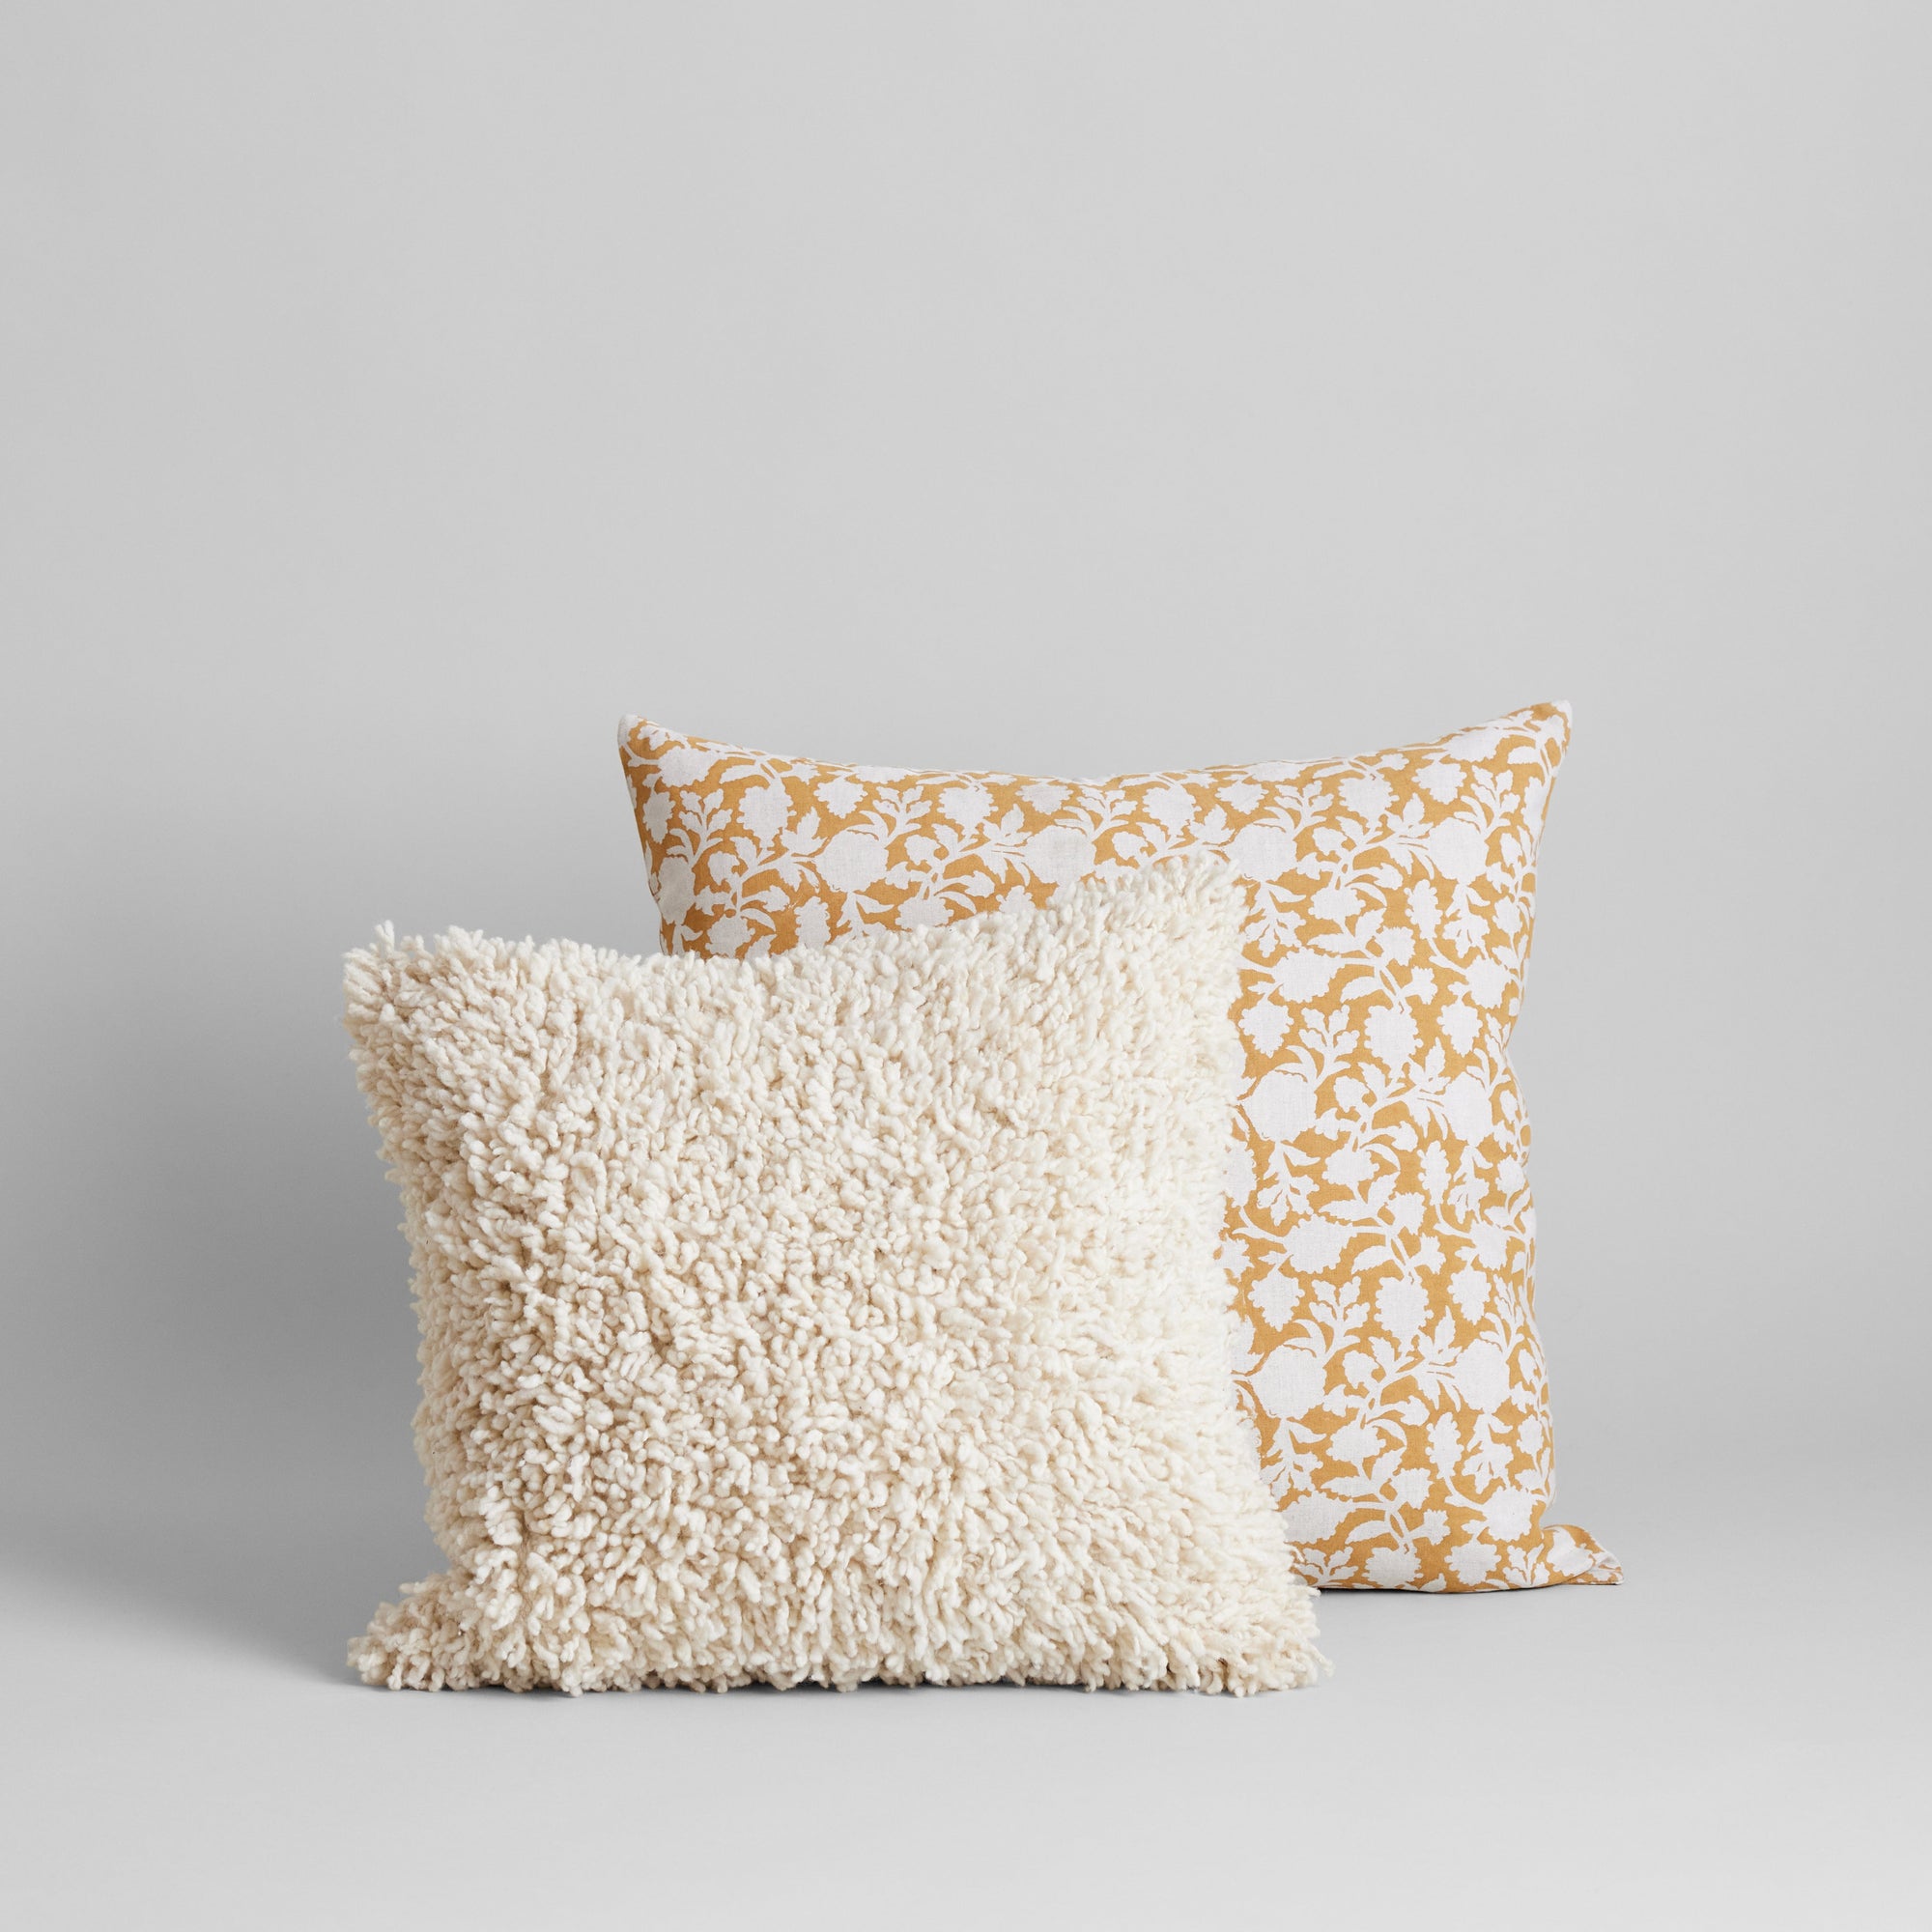 Tina Hand Block Printed Linen Pillow Cover, 22x22